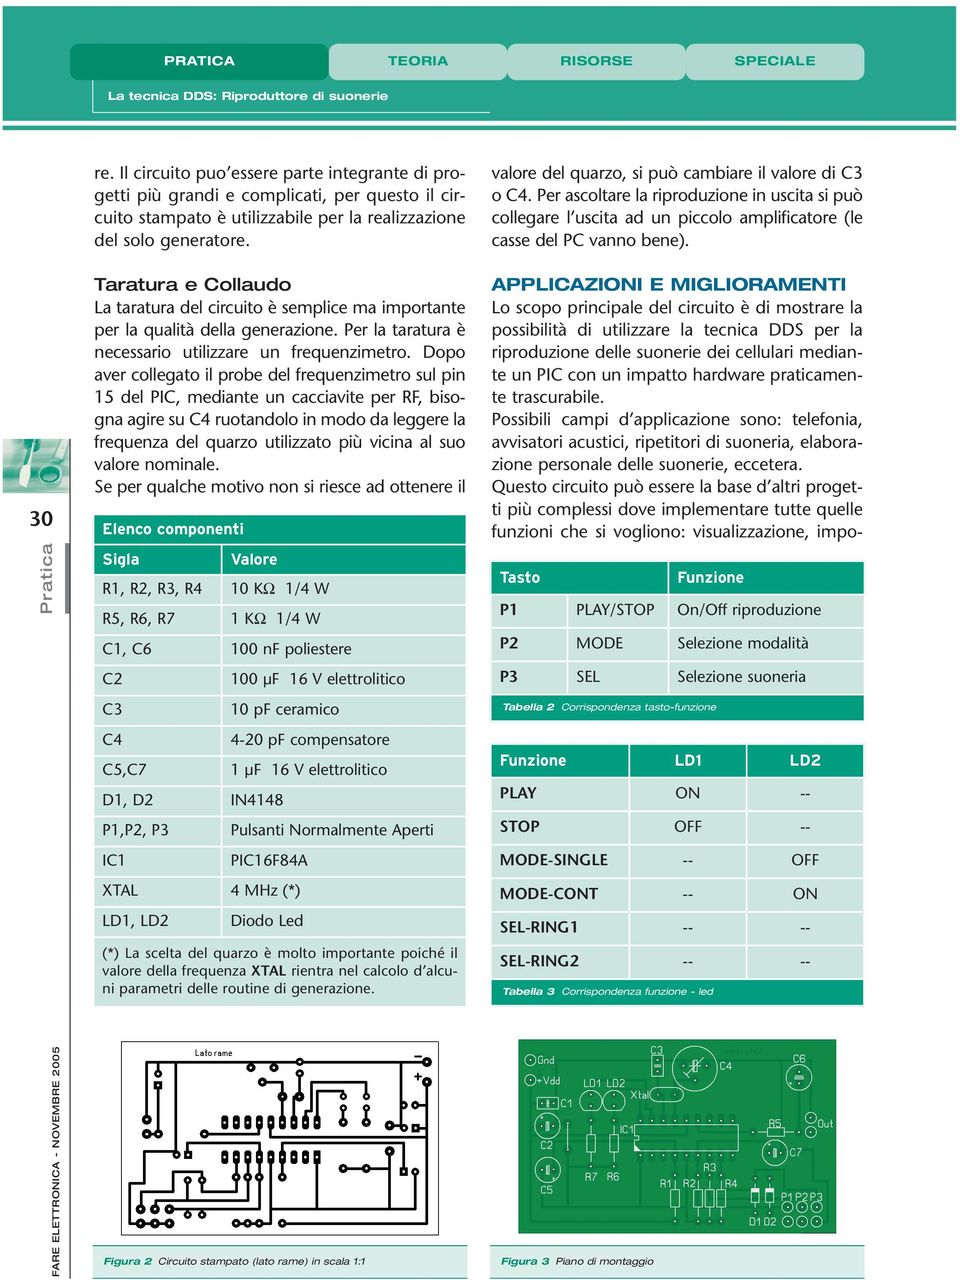 Taratura e Collaudo La taratura del circuito è semplice ma importante per la qualità della generazione. Per la taratura è necessario utilizzare un frequenzimetro.